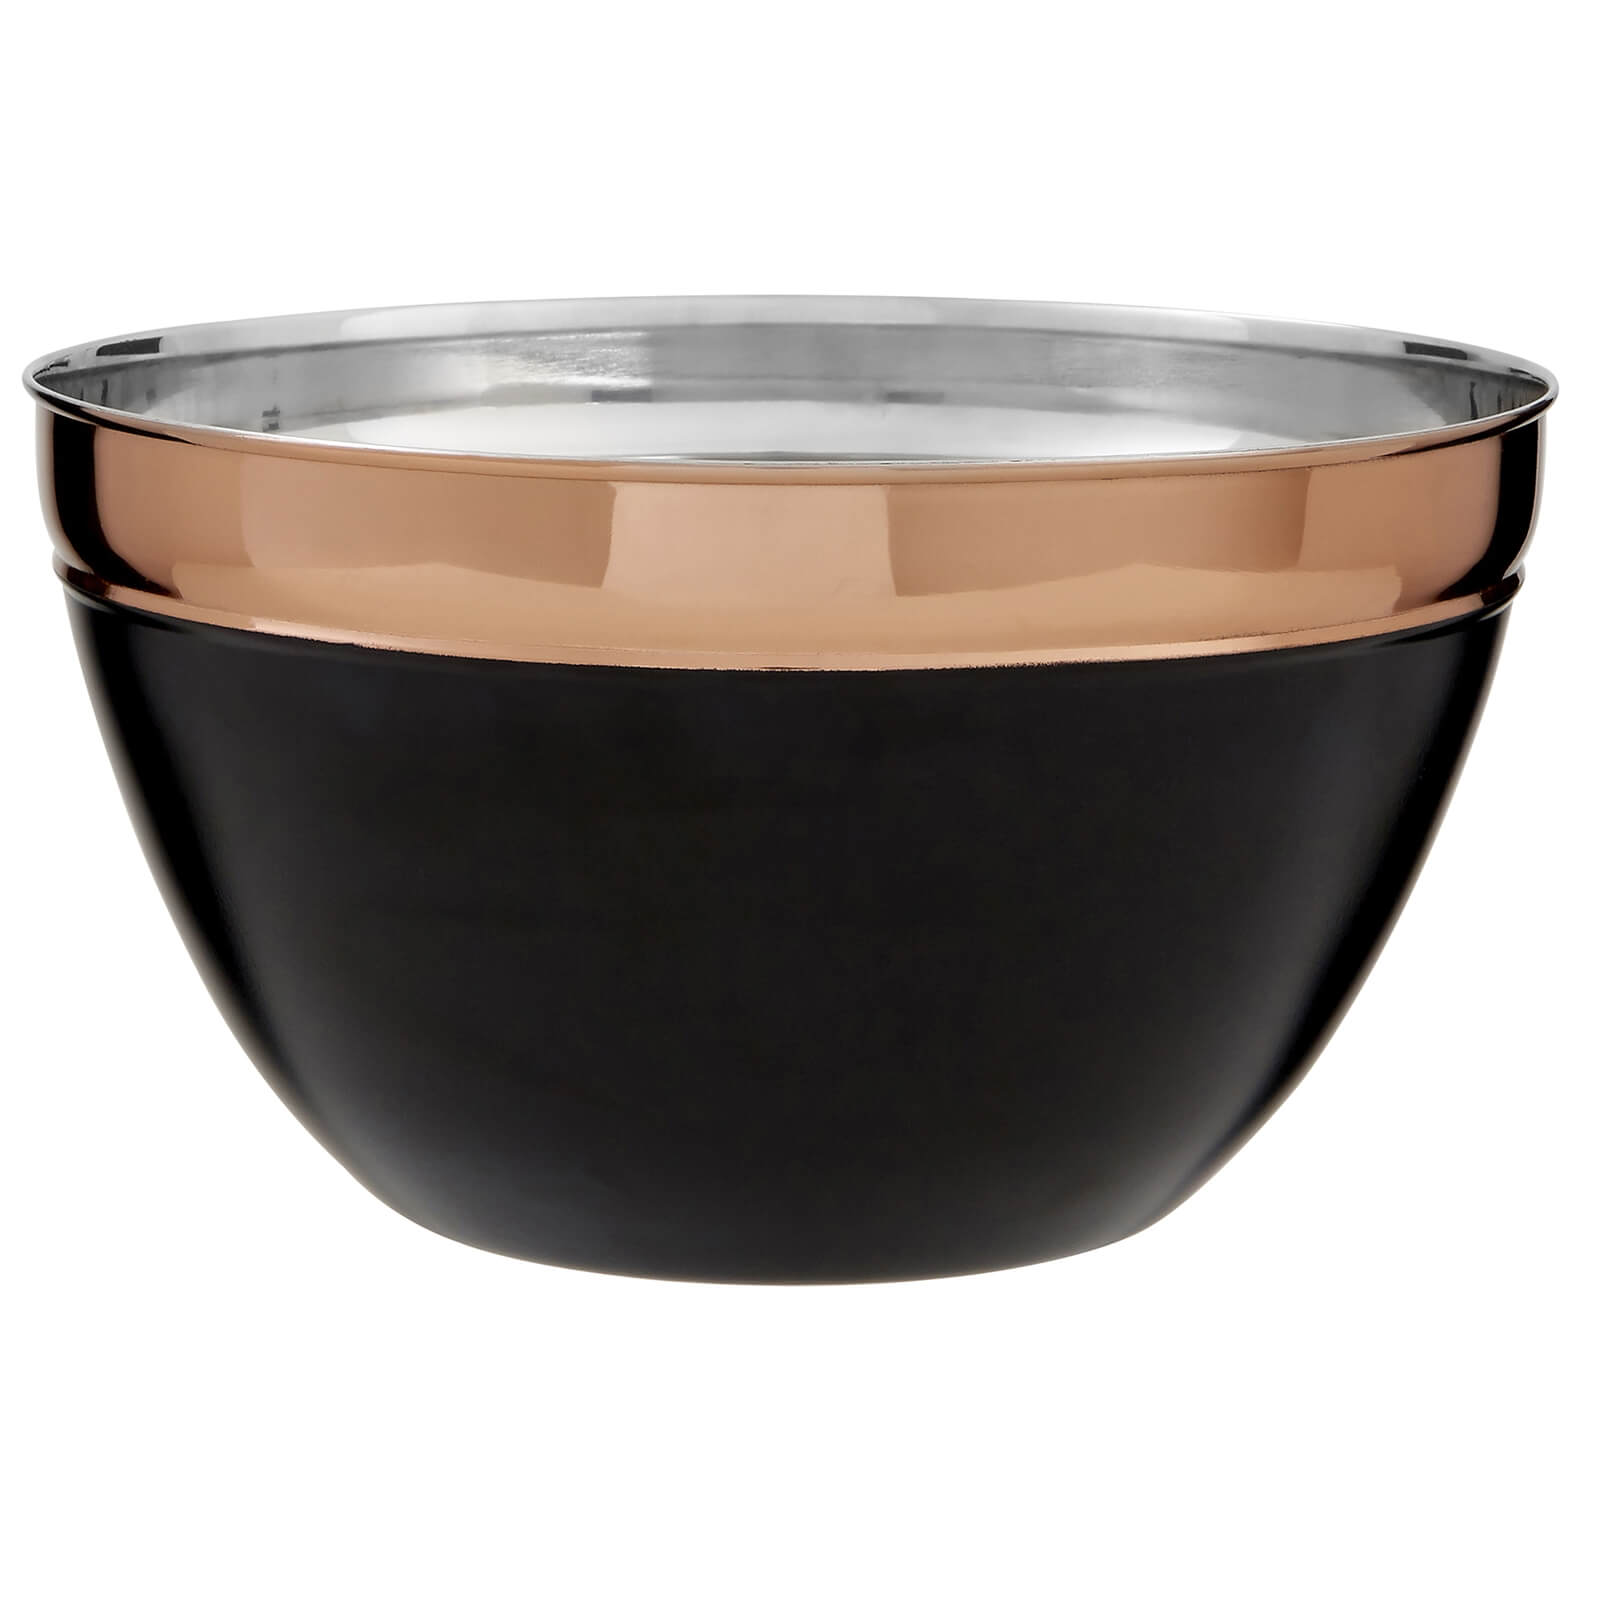 Prescott Large Mixing Bowl - Copper